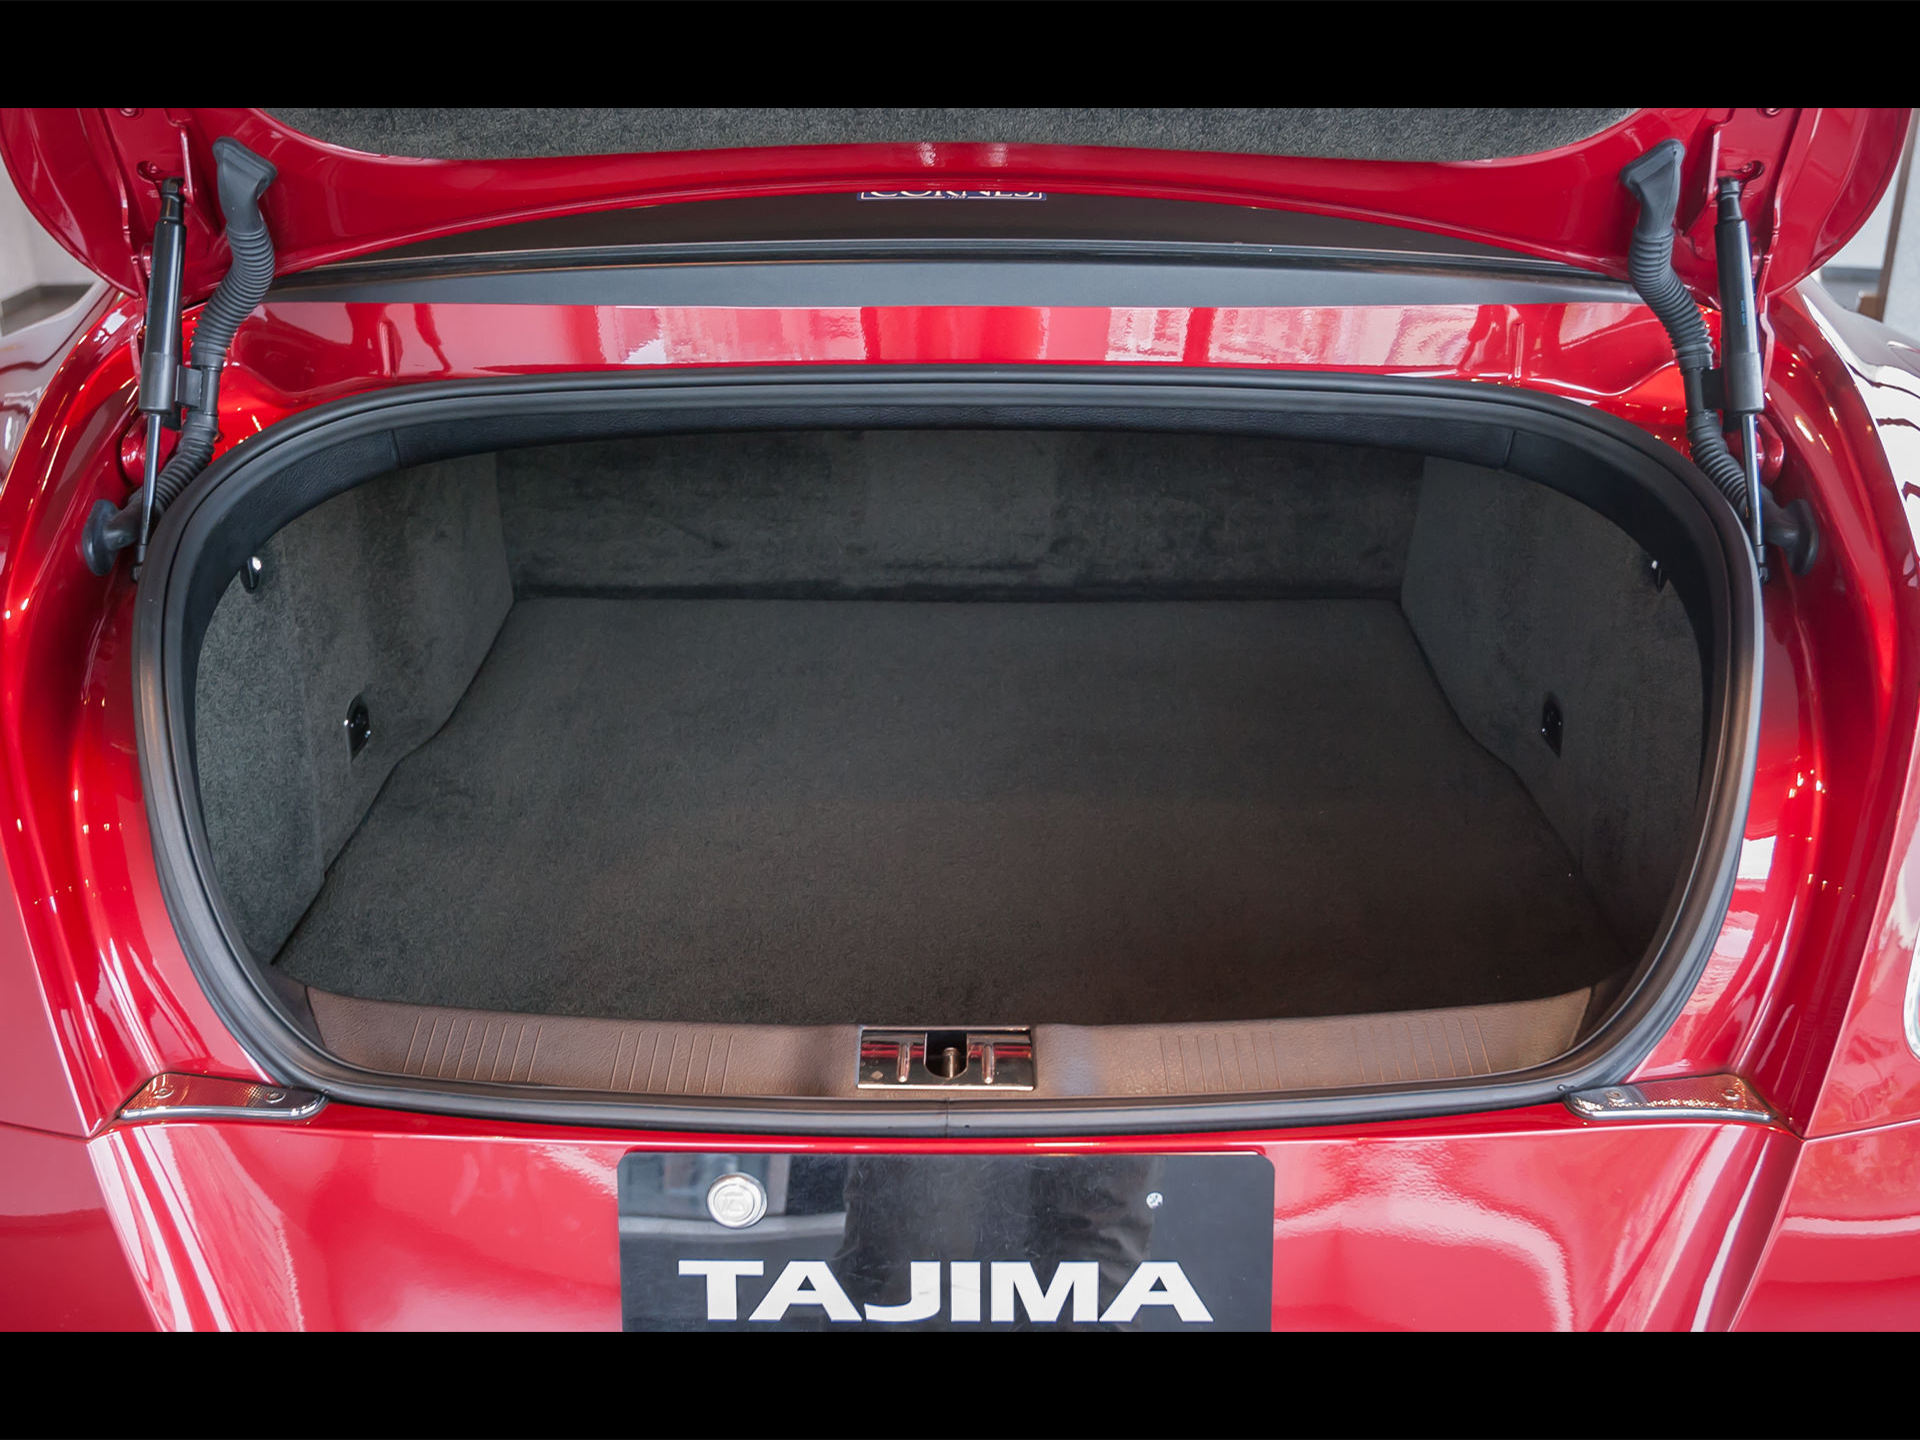 『ベントレー Continental GT V8 S』 タジマプレミアム中古車